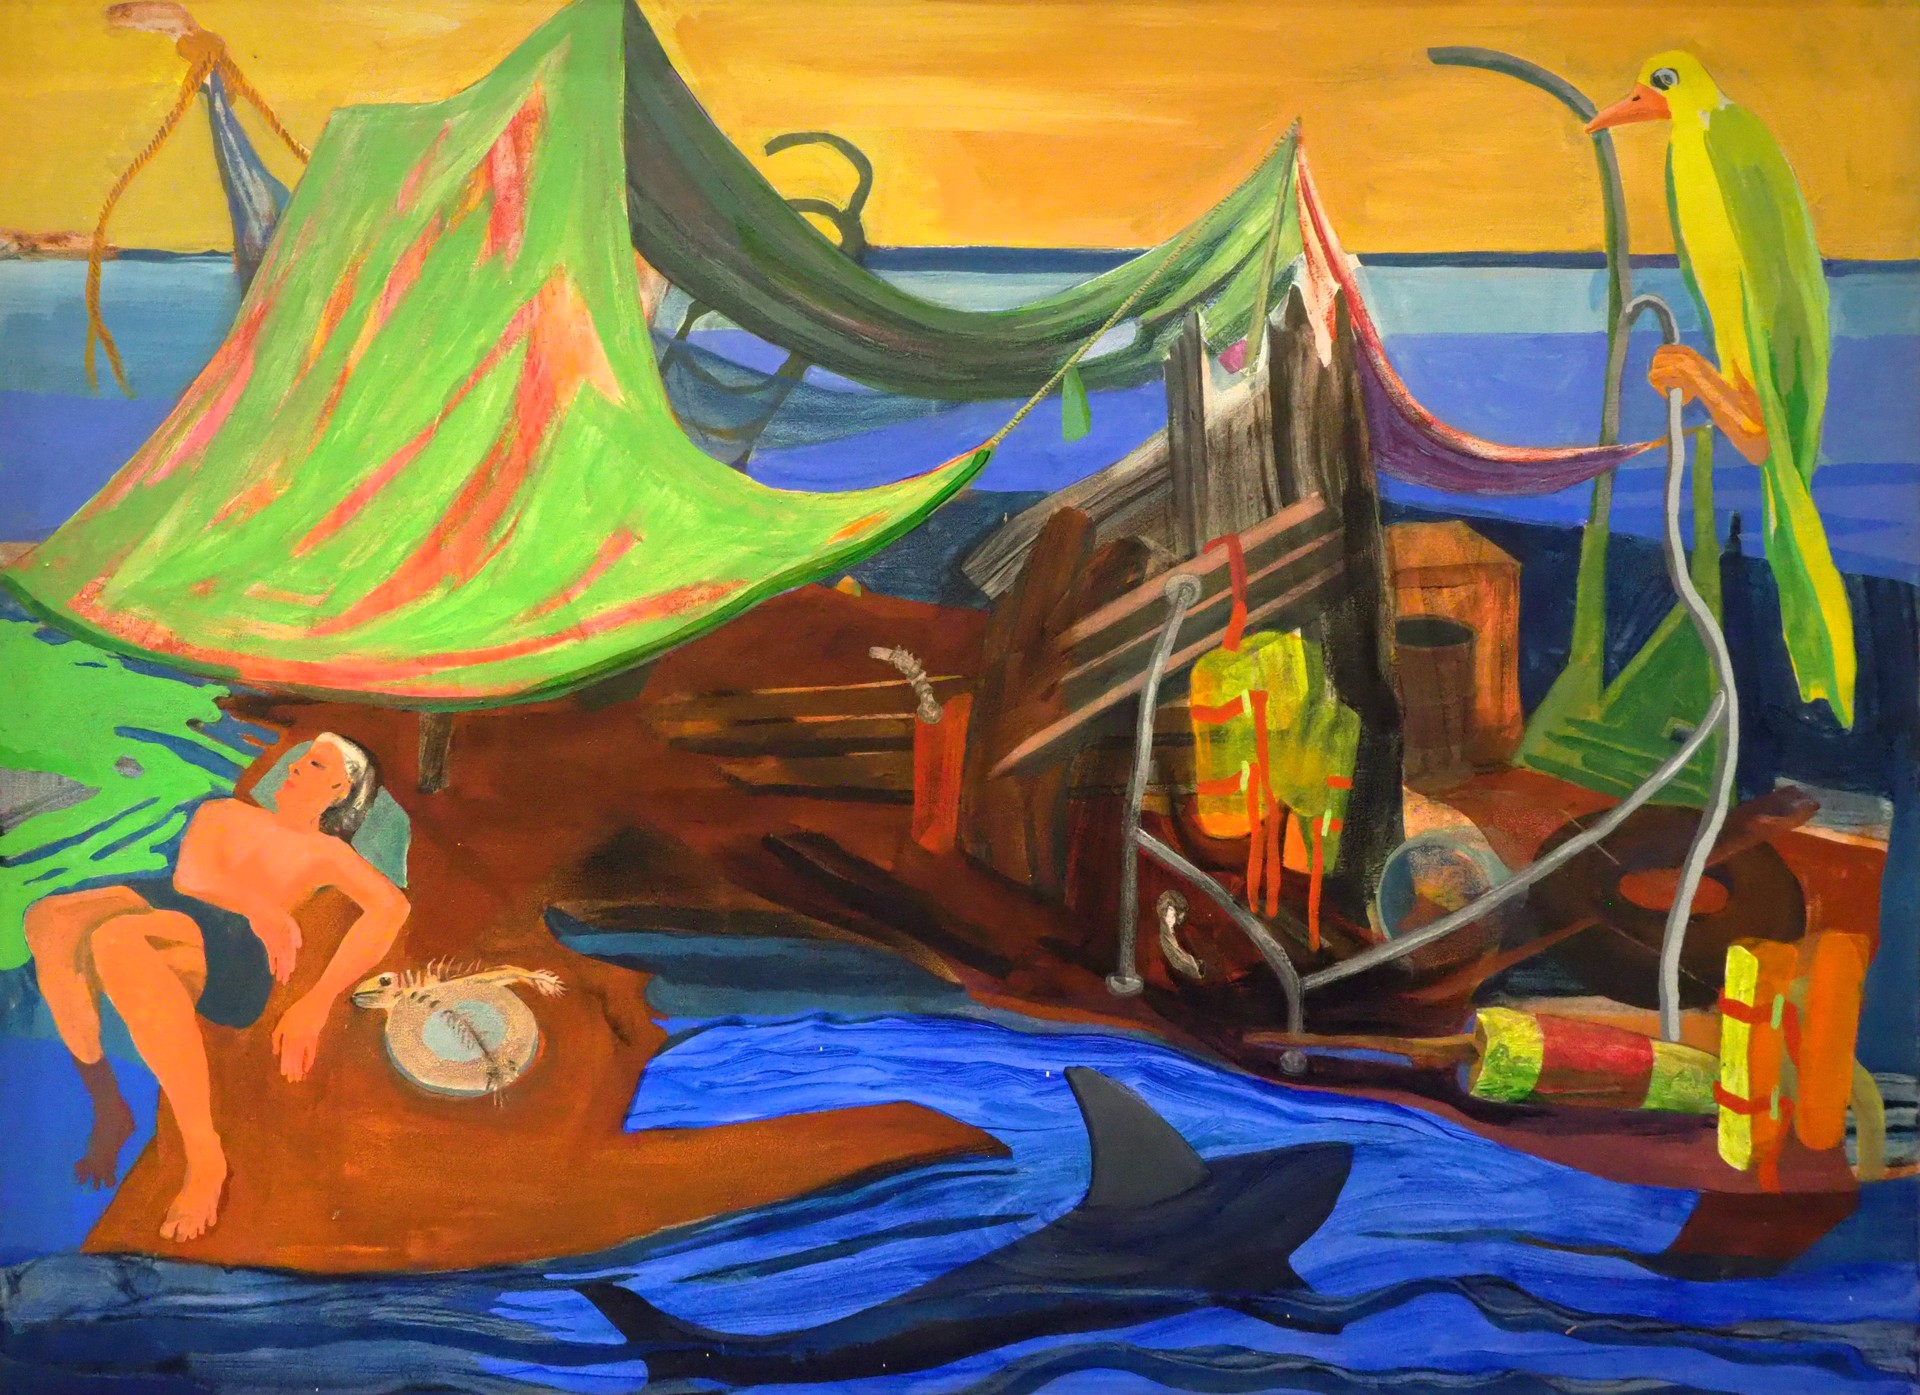 Raft with Green Sail by Ke Francis